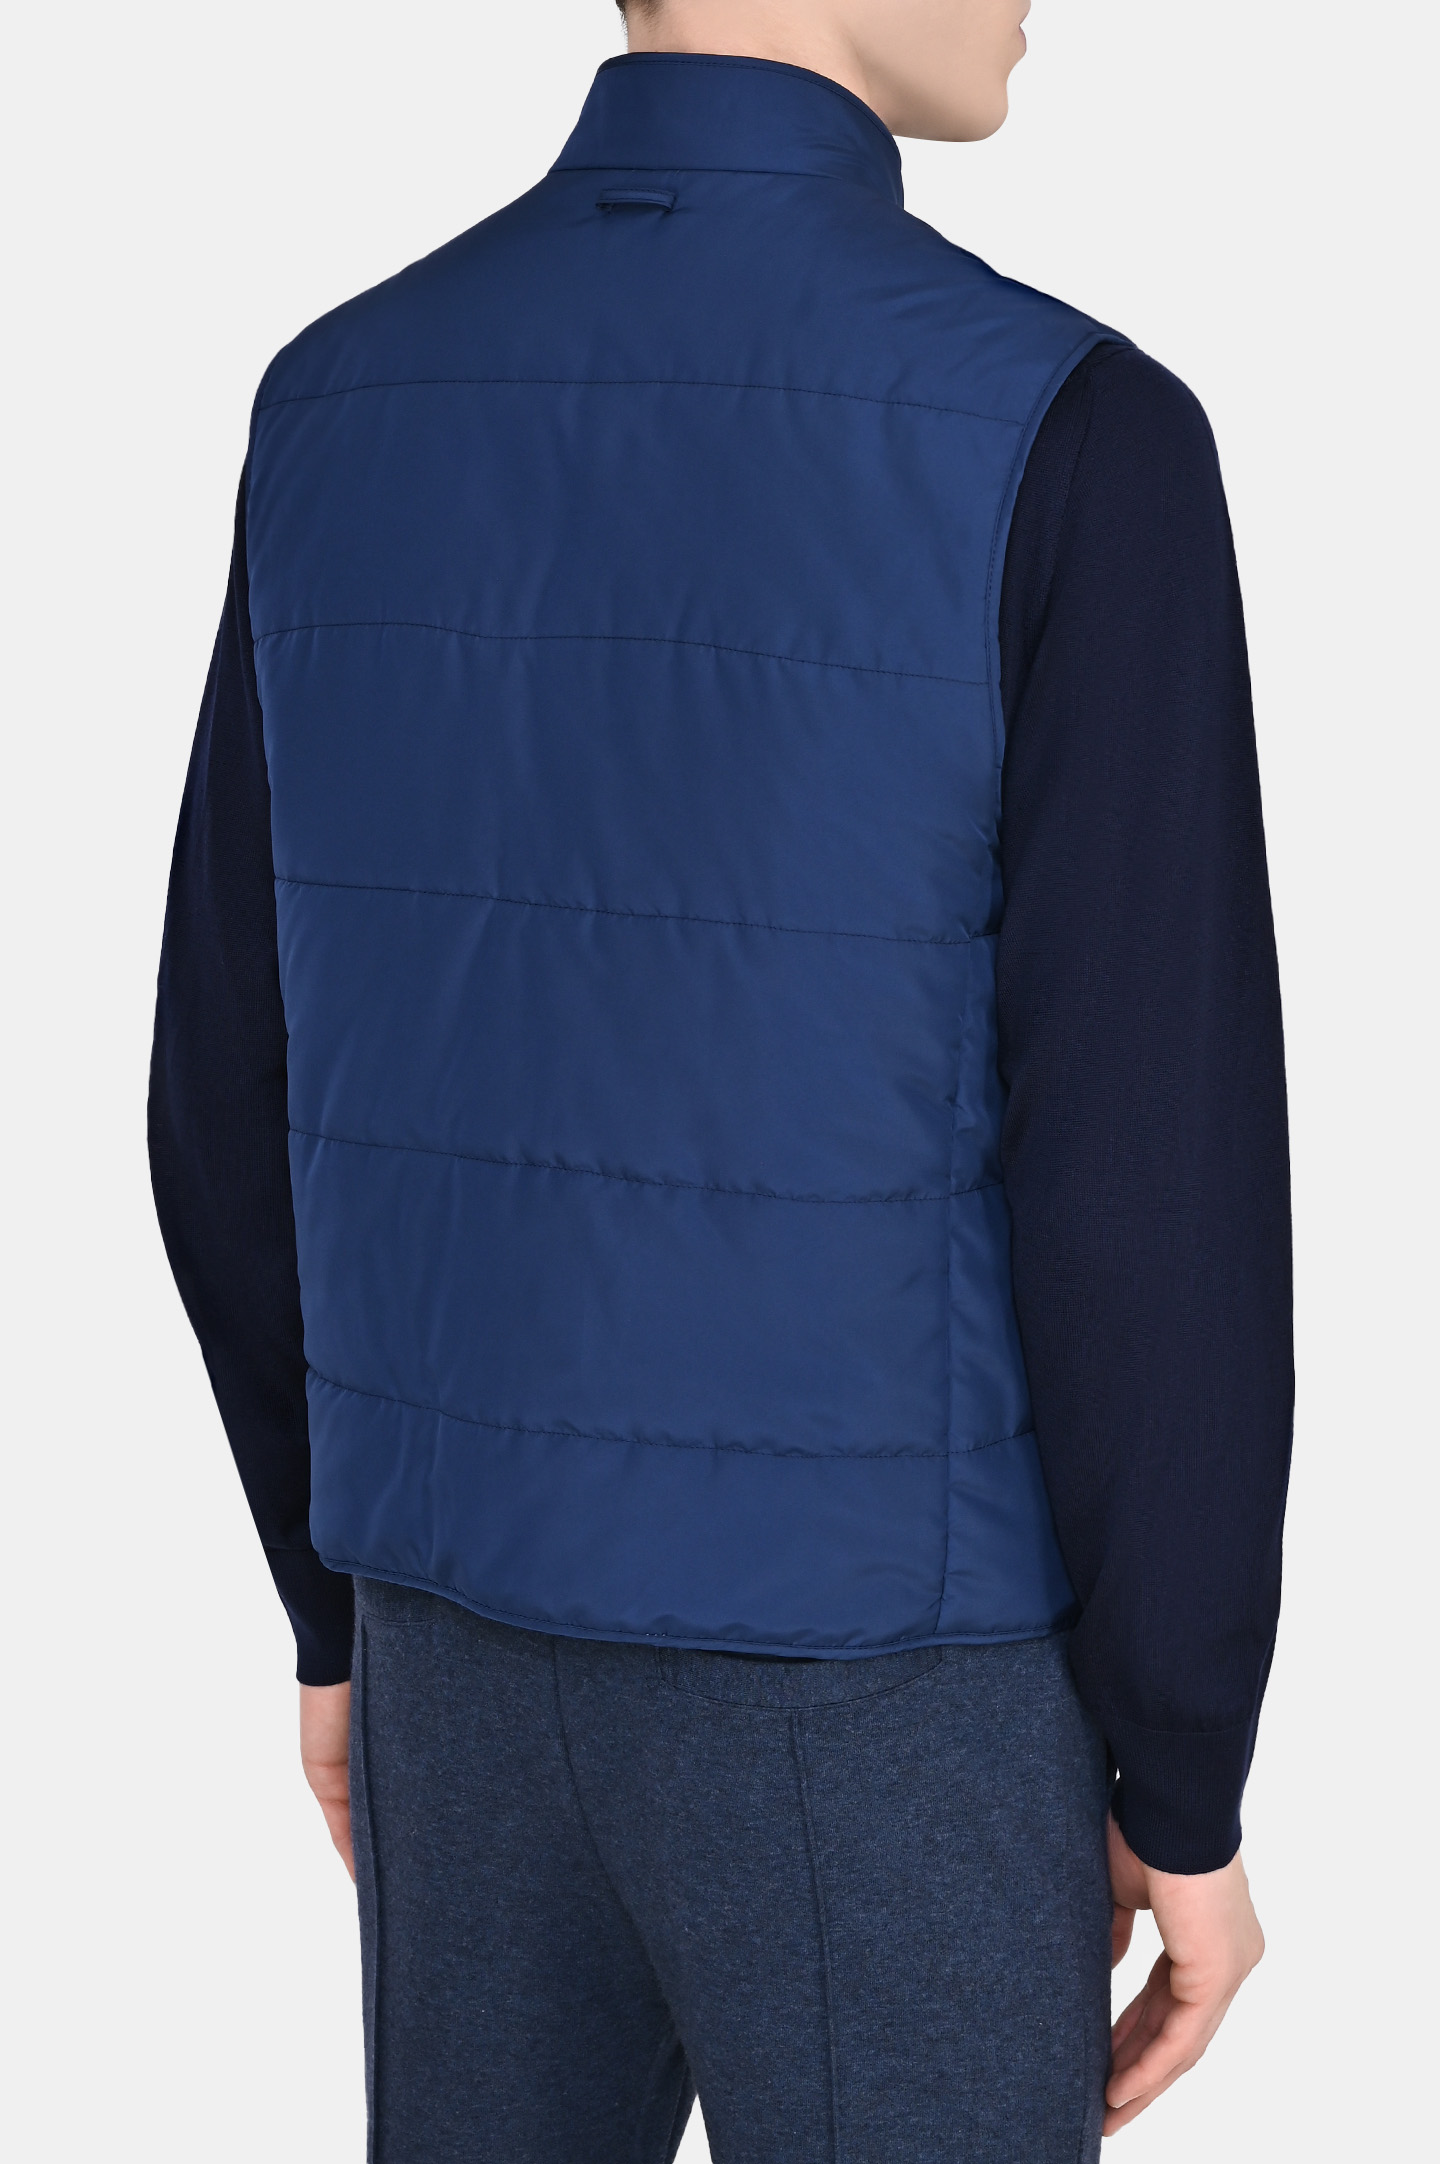 Куртка DORIANI CASHMERE A361/GILNY, цвет: Синий, Мужской